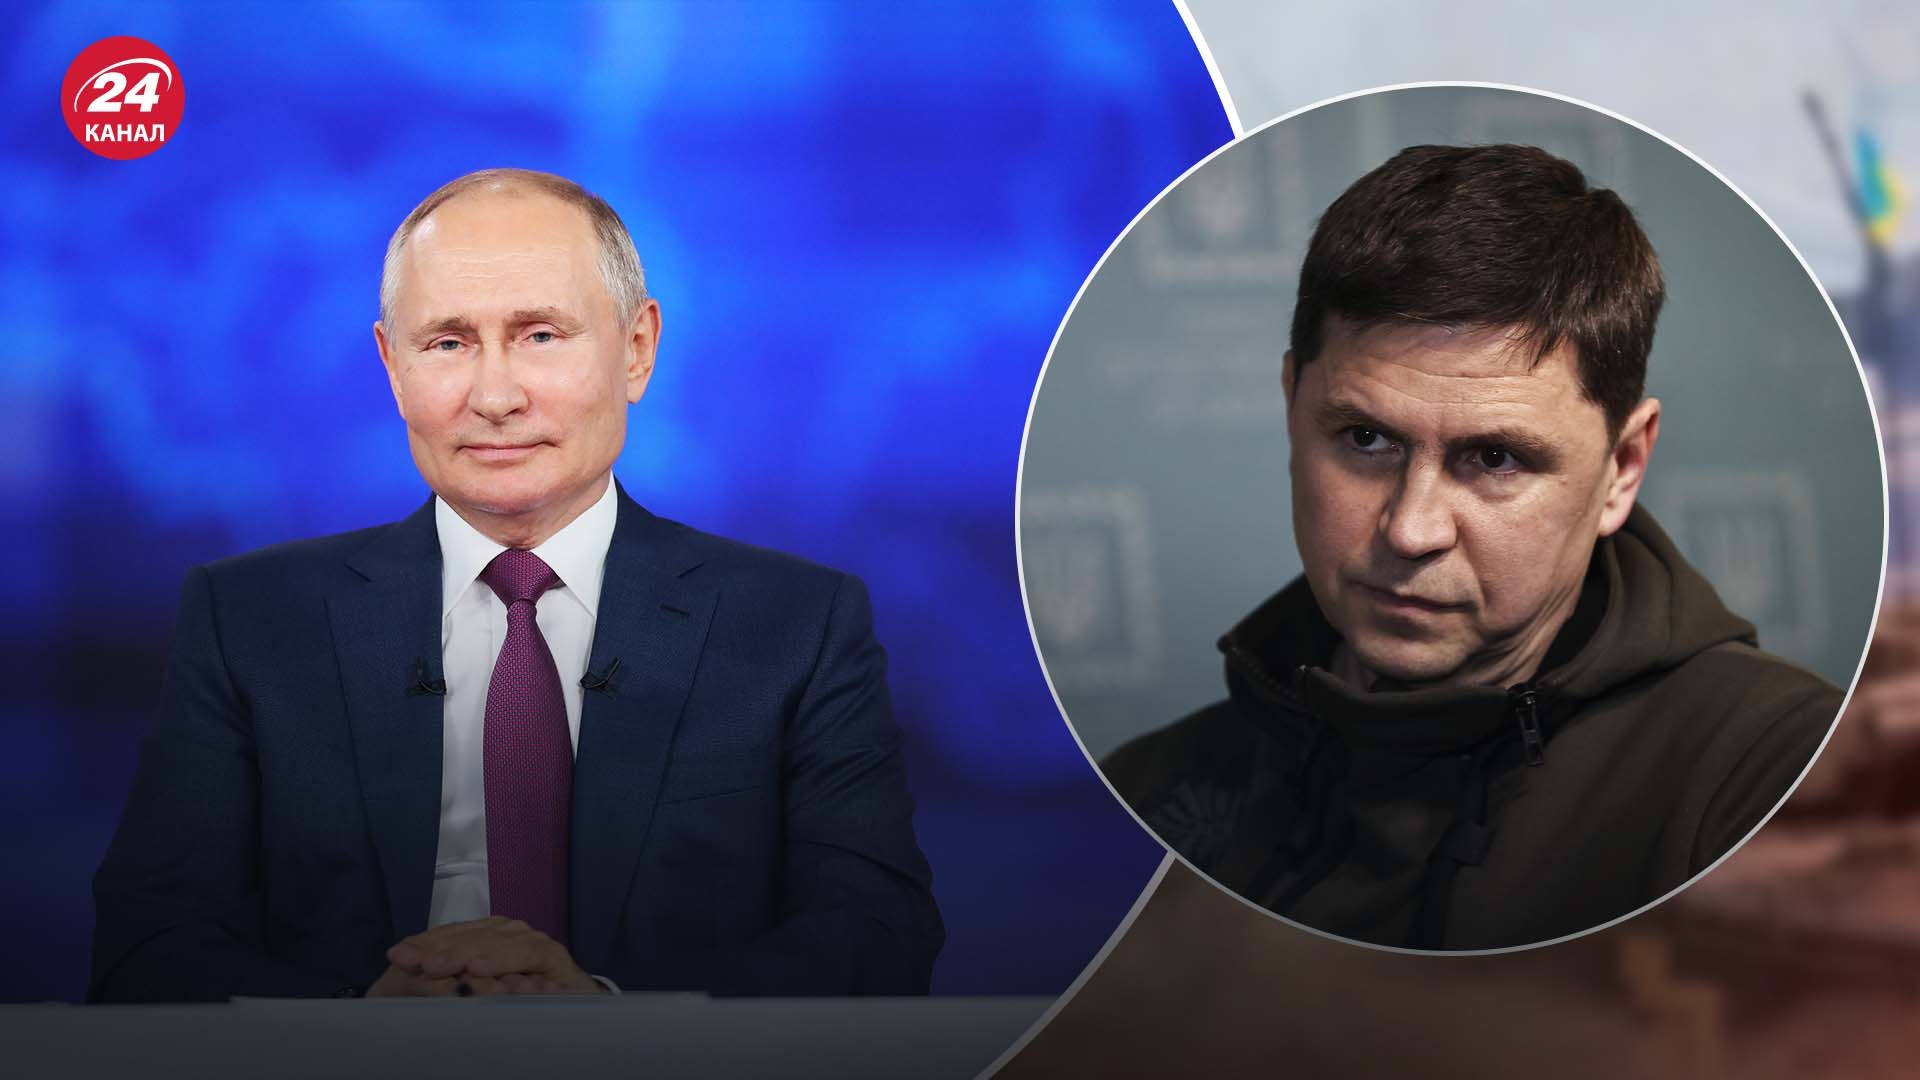 Реакция ОП на прямую линию с Путиным - что показало выступление президента России - 24 Канал